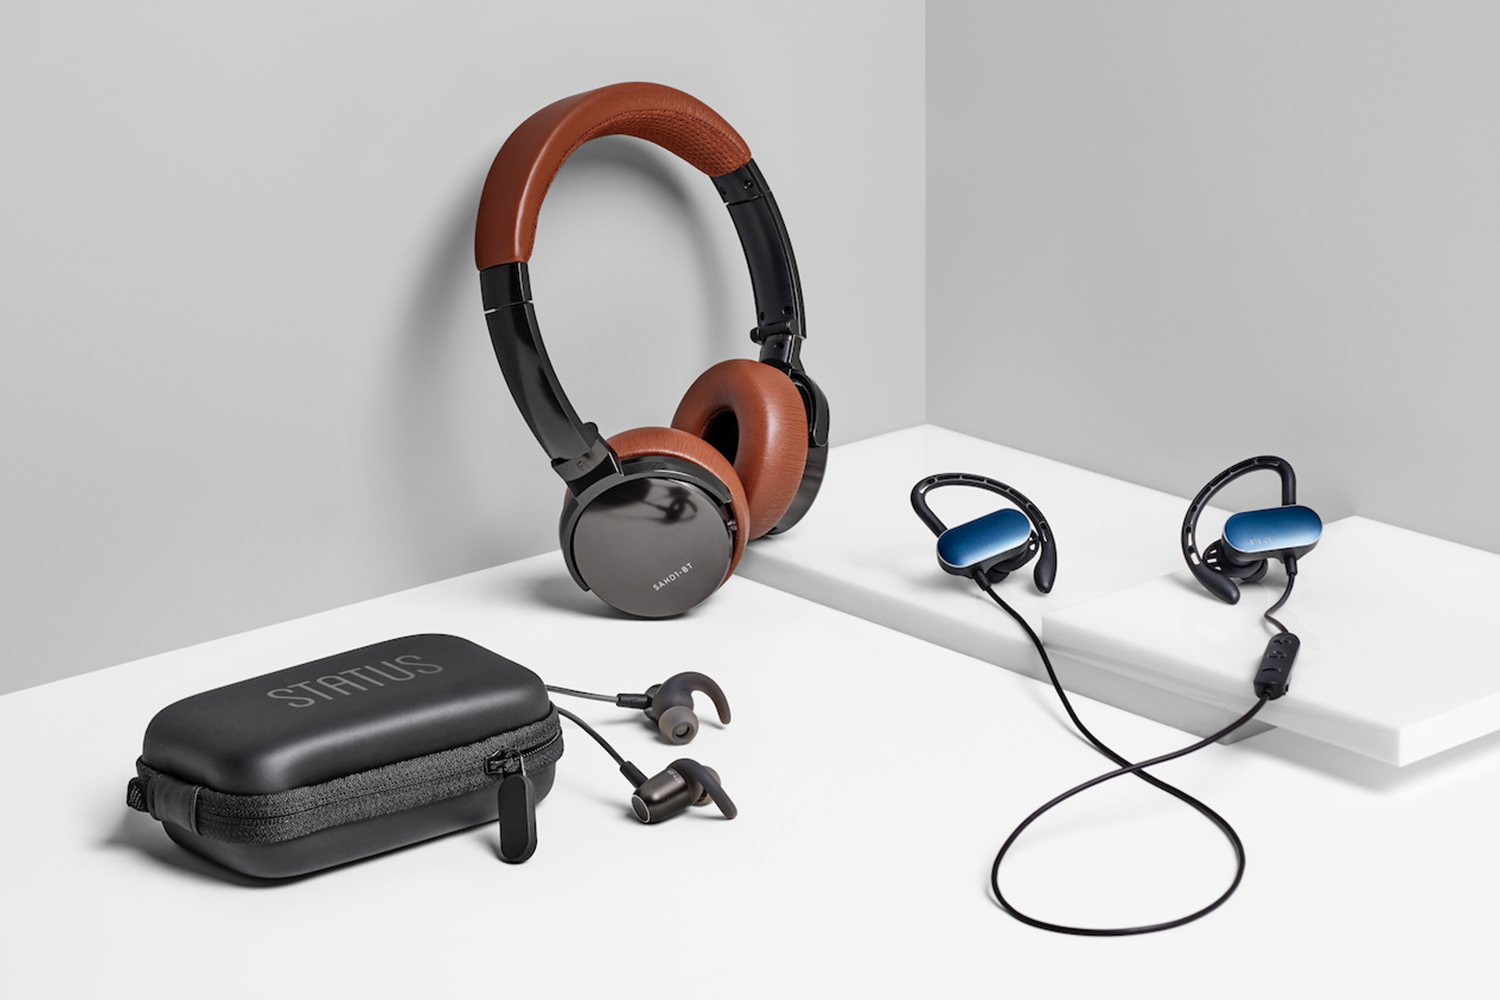 Status on-ear headphones, earbuds and in-ear headphones